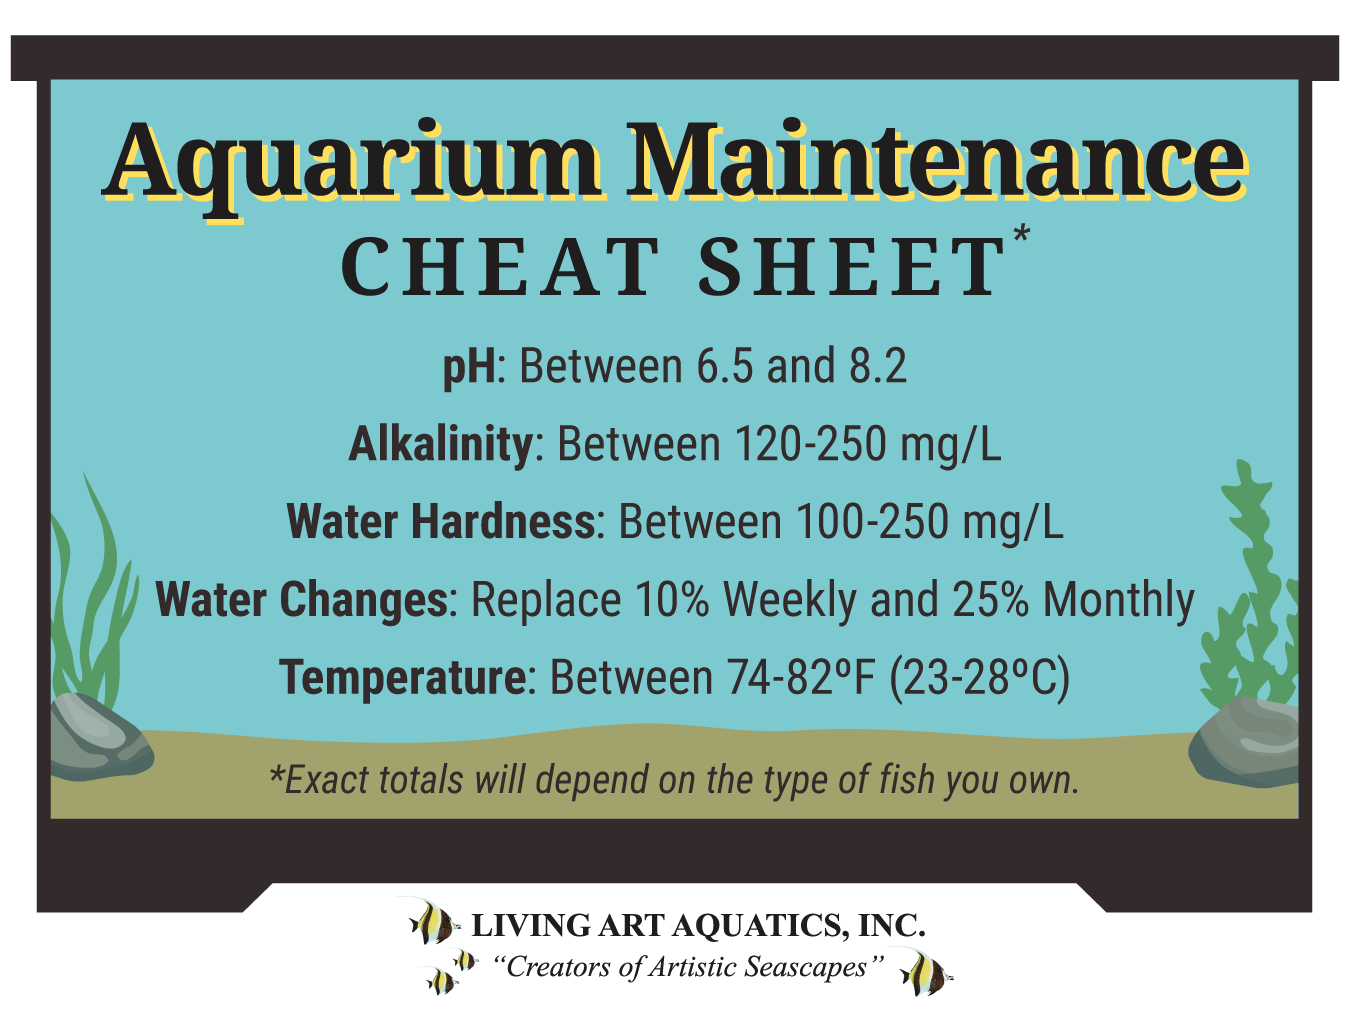 Aquarium Maintenance Cheat Sheet - Aquarium Maintenance Pillar Page Unique Graphic